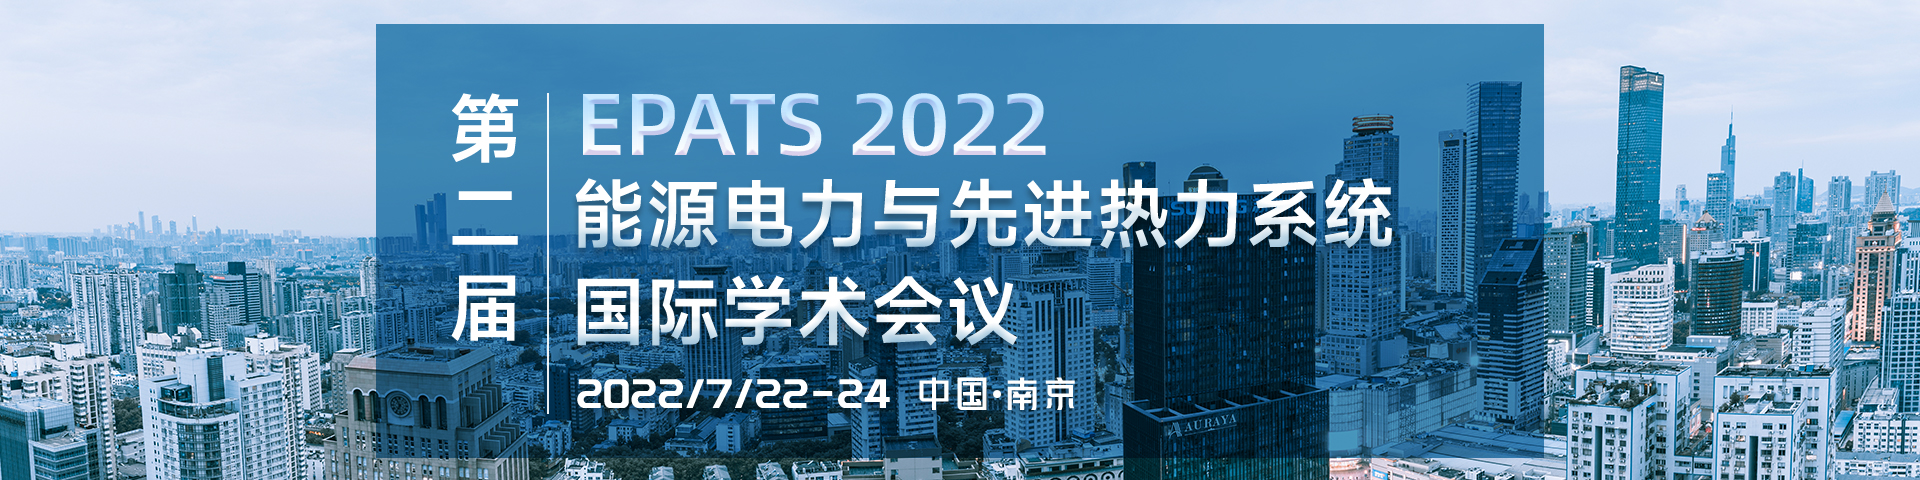 7月南京-EPATS2022-艾思平臺上線平臺1920-林微0322.jpg